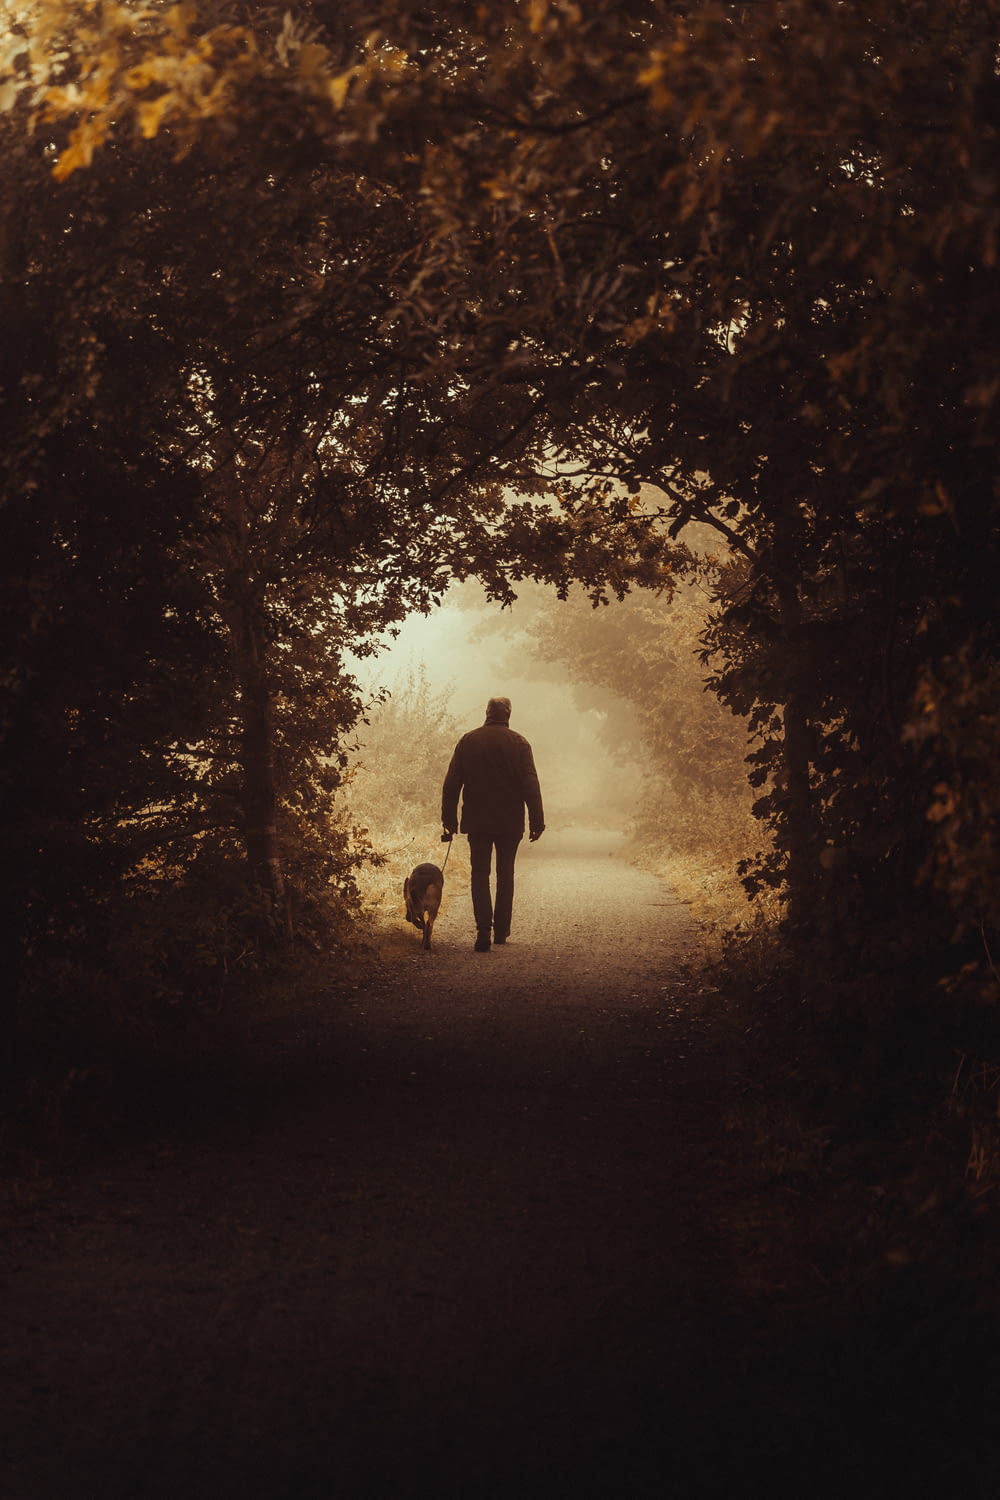 a man walking a dog down a path through a forest